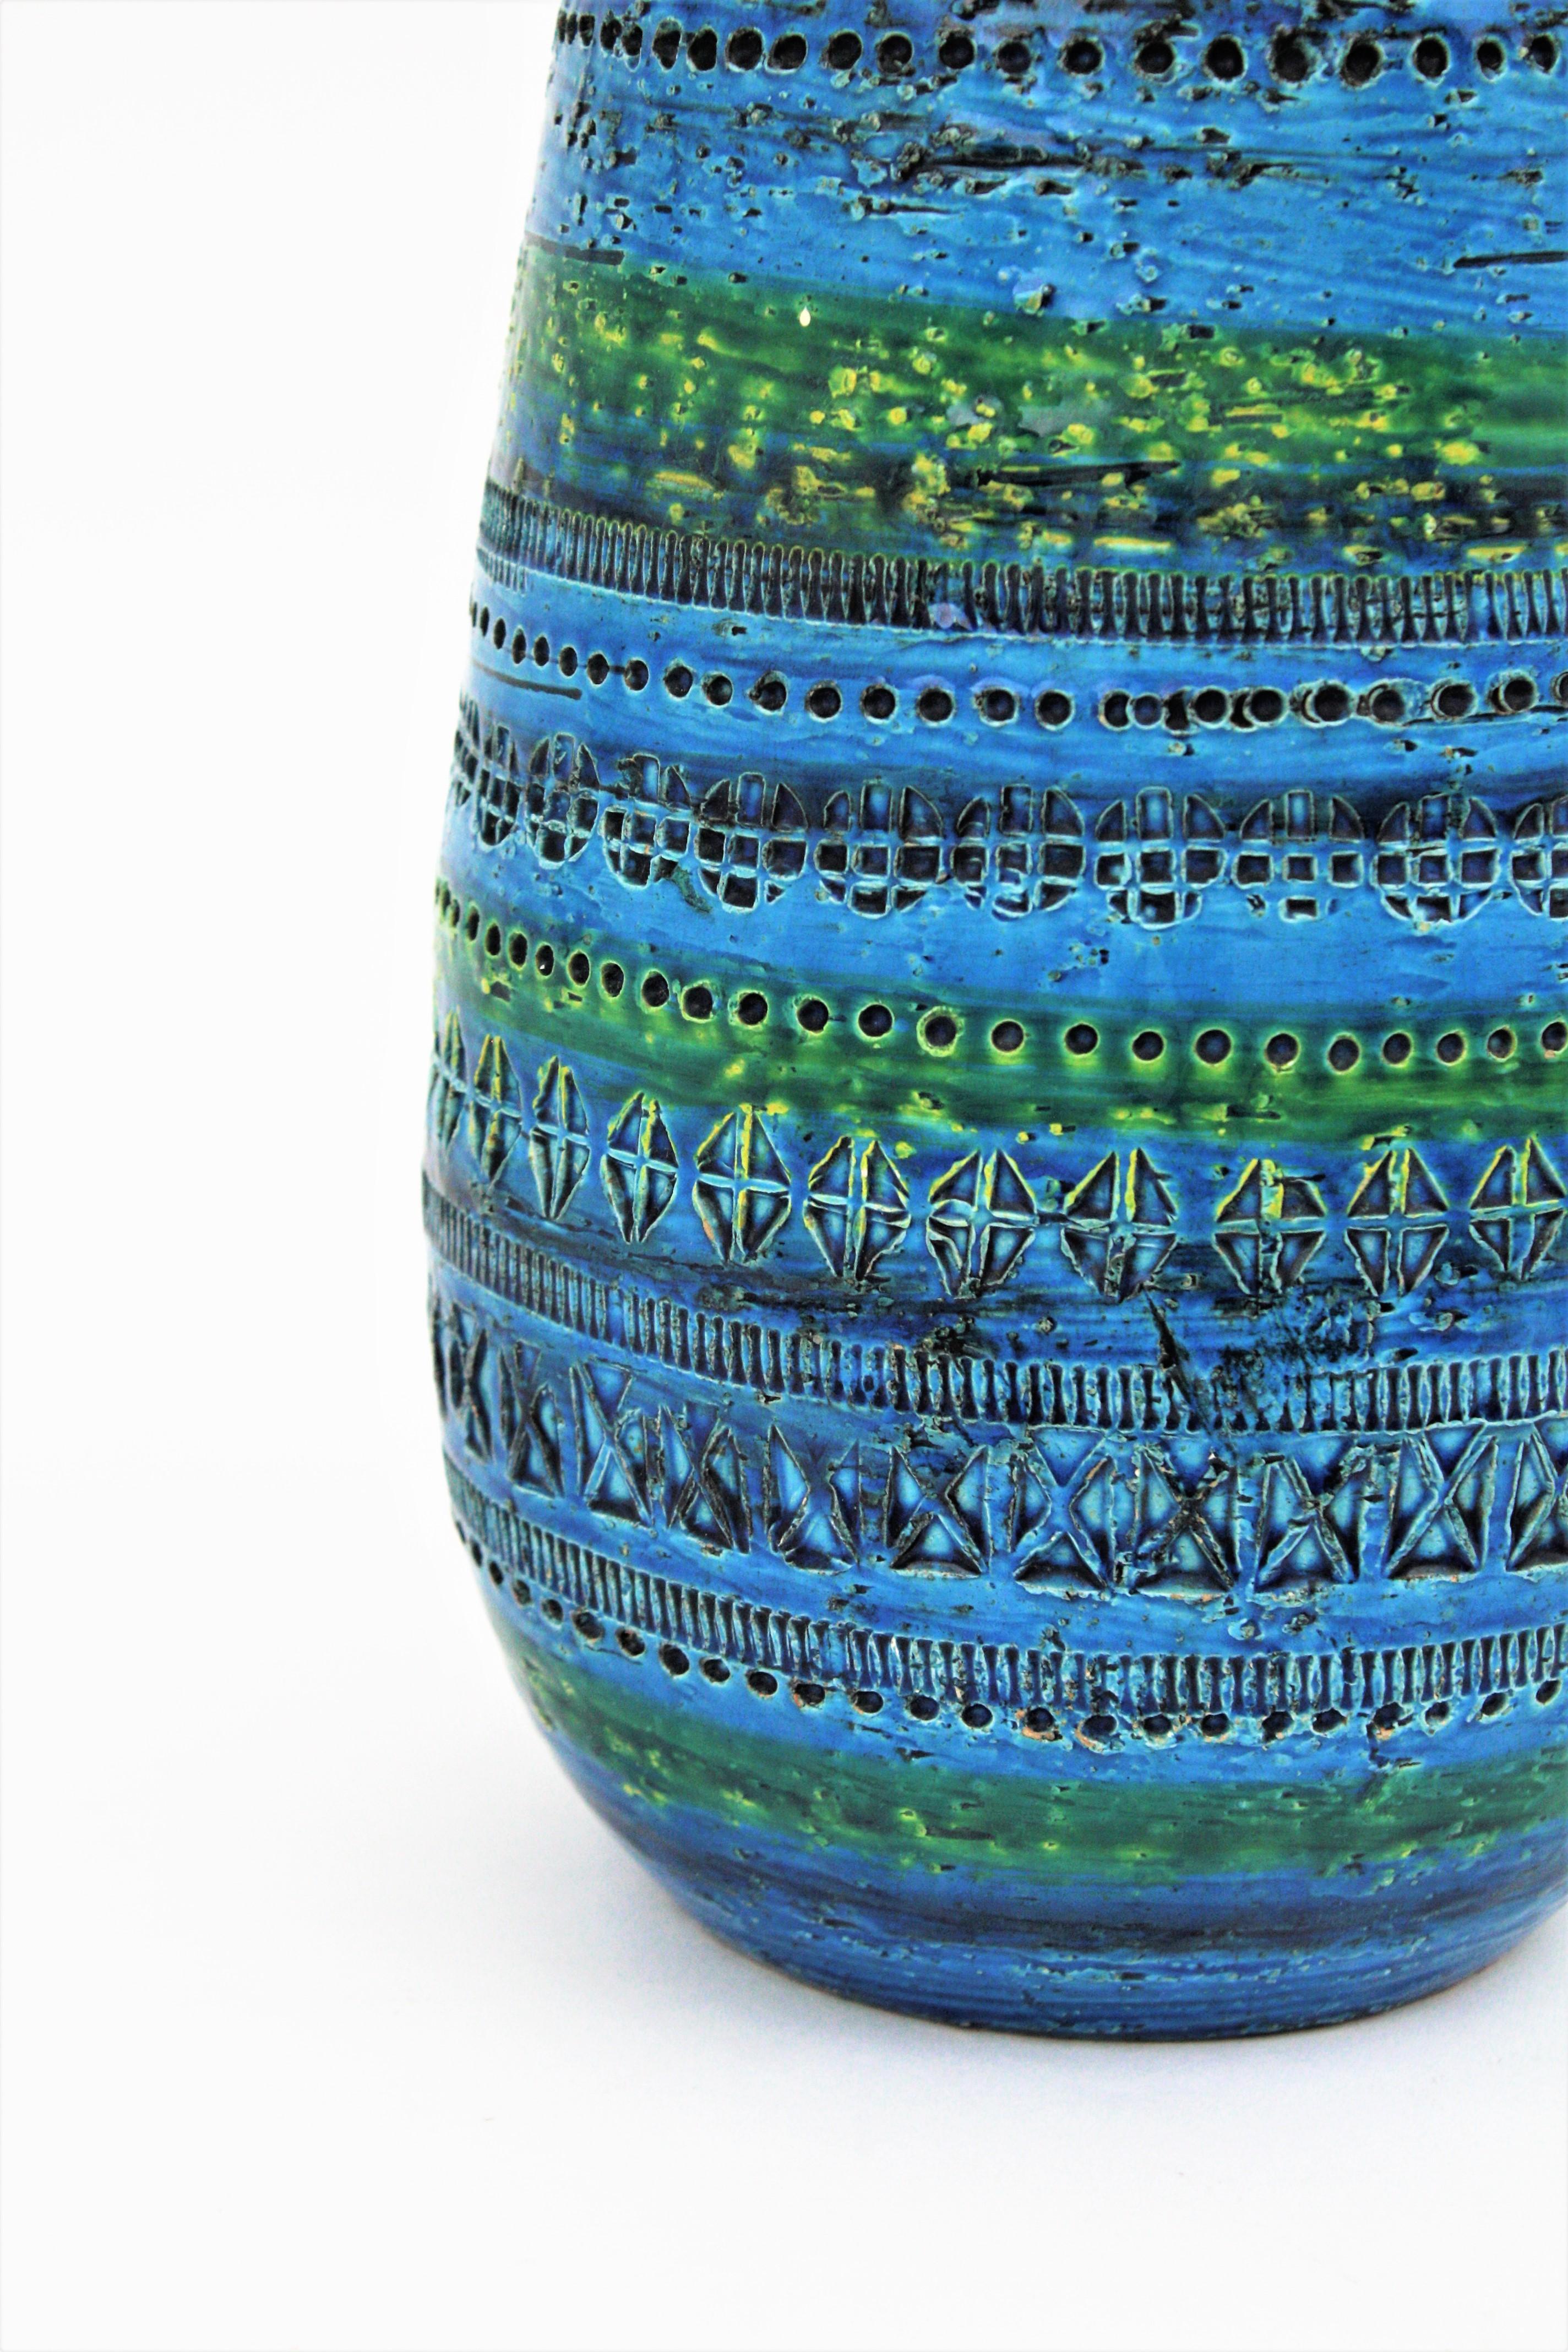 Aldo Londi Bitossi Rimini Blue Glazed Ceramic Ovoid Large Vase 3